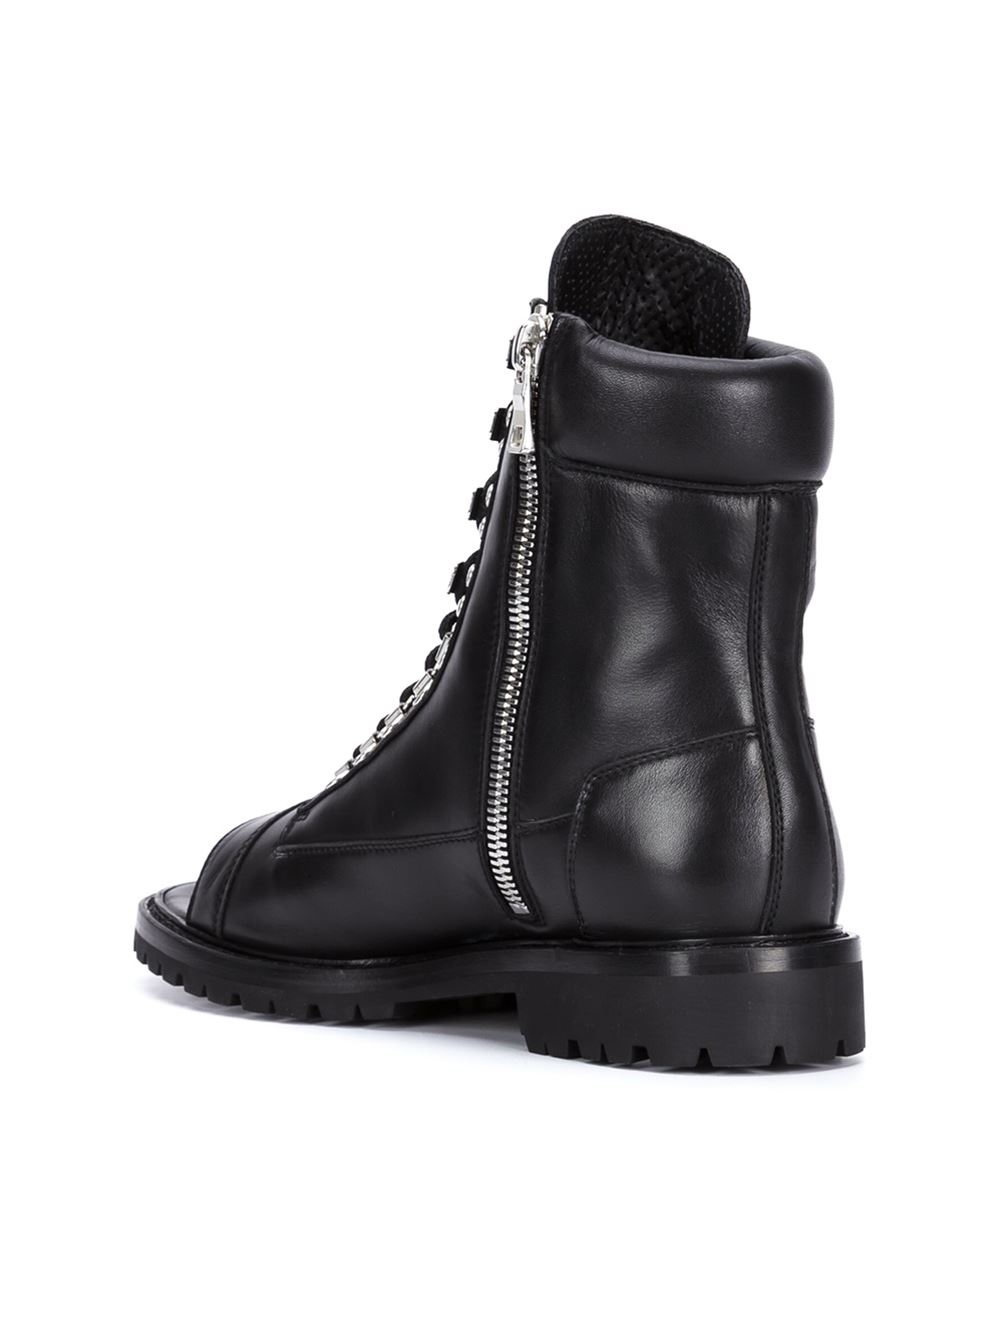 Balmain Open Toe Boots in Black for Men - Lyst